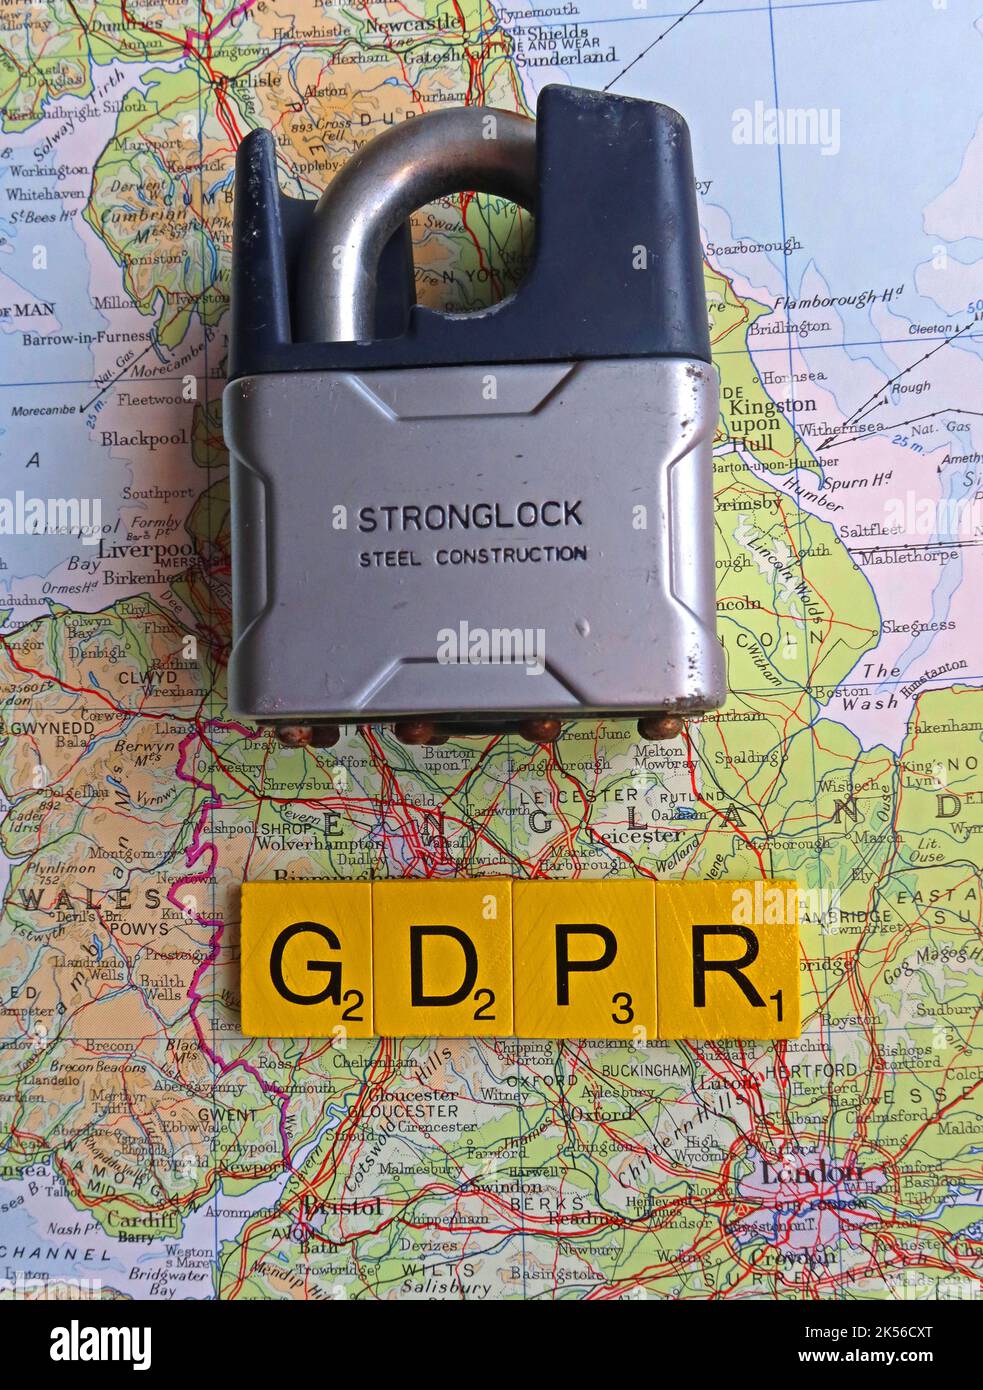 GDPR - lois britanniques sur la protection des données et de la personne, pour l'Angleterre, l'Écosse, le pays de Galles et ni. Assurer la sécurité de nos données Banque D'Images